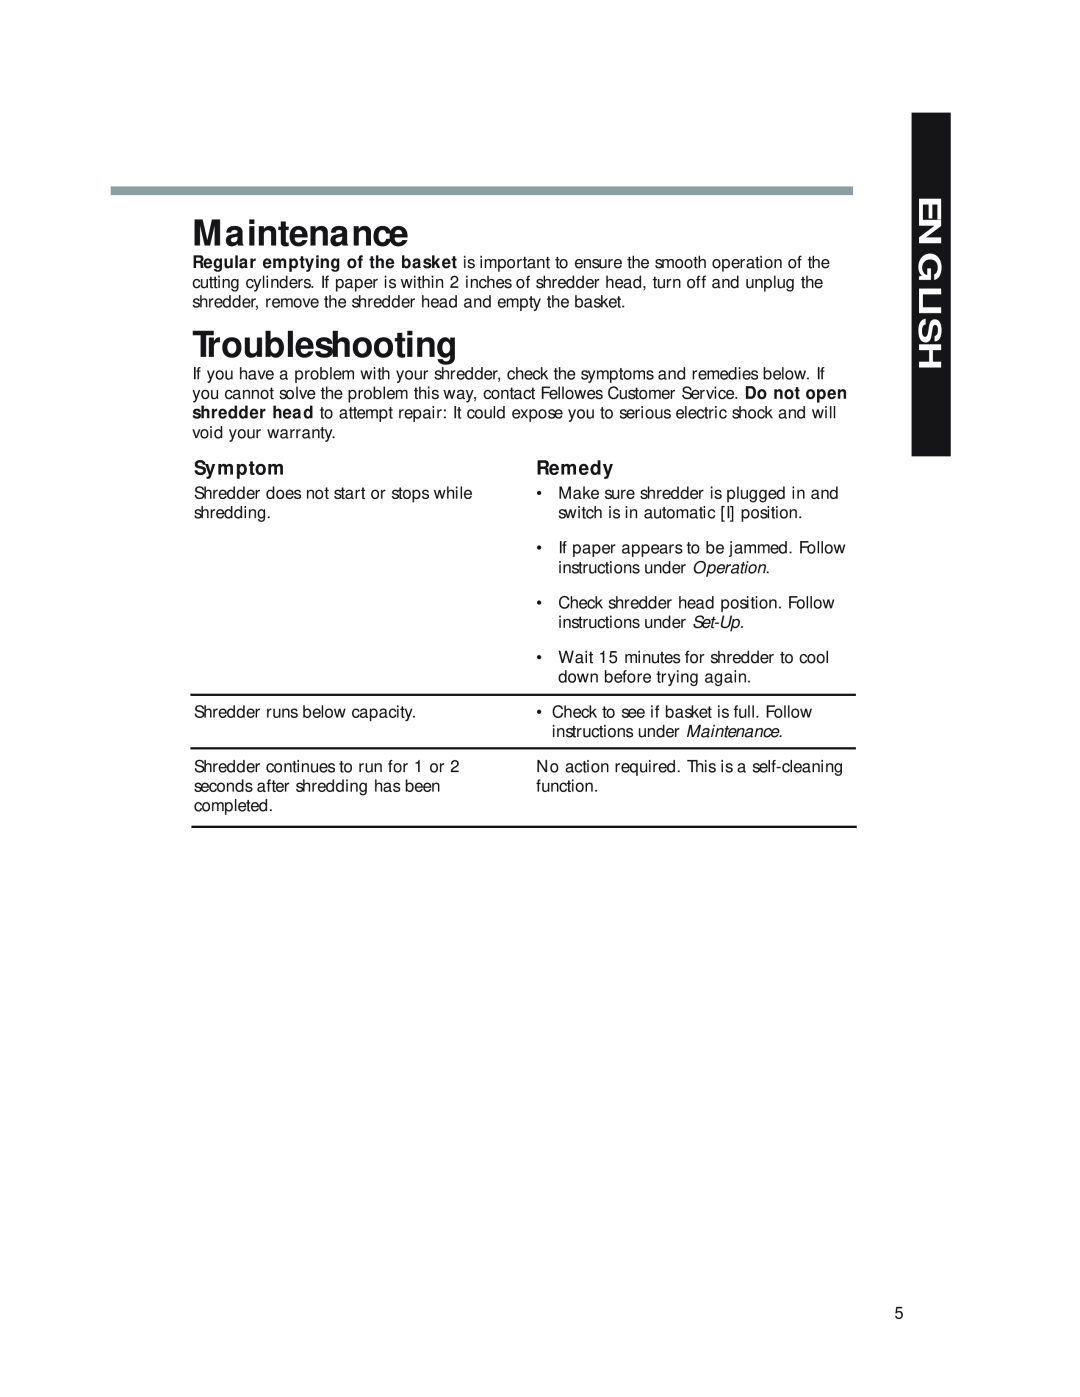 Fellowes P50CM manual Maintenance, Troubleshooting, Symptom, Remedy, English 